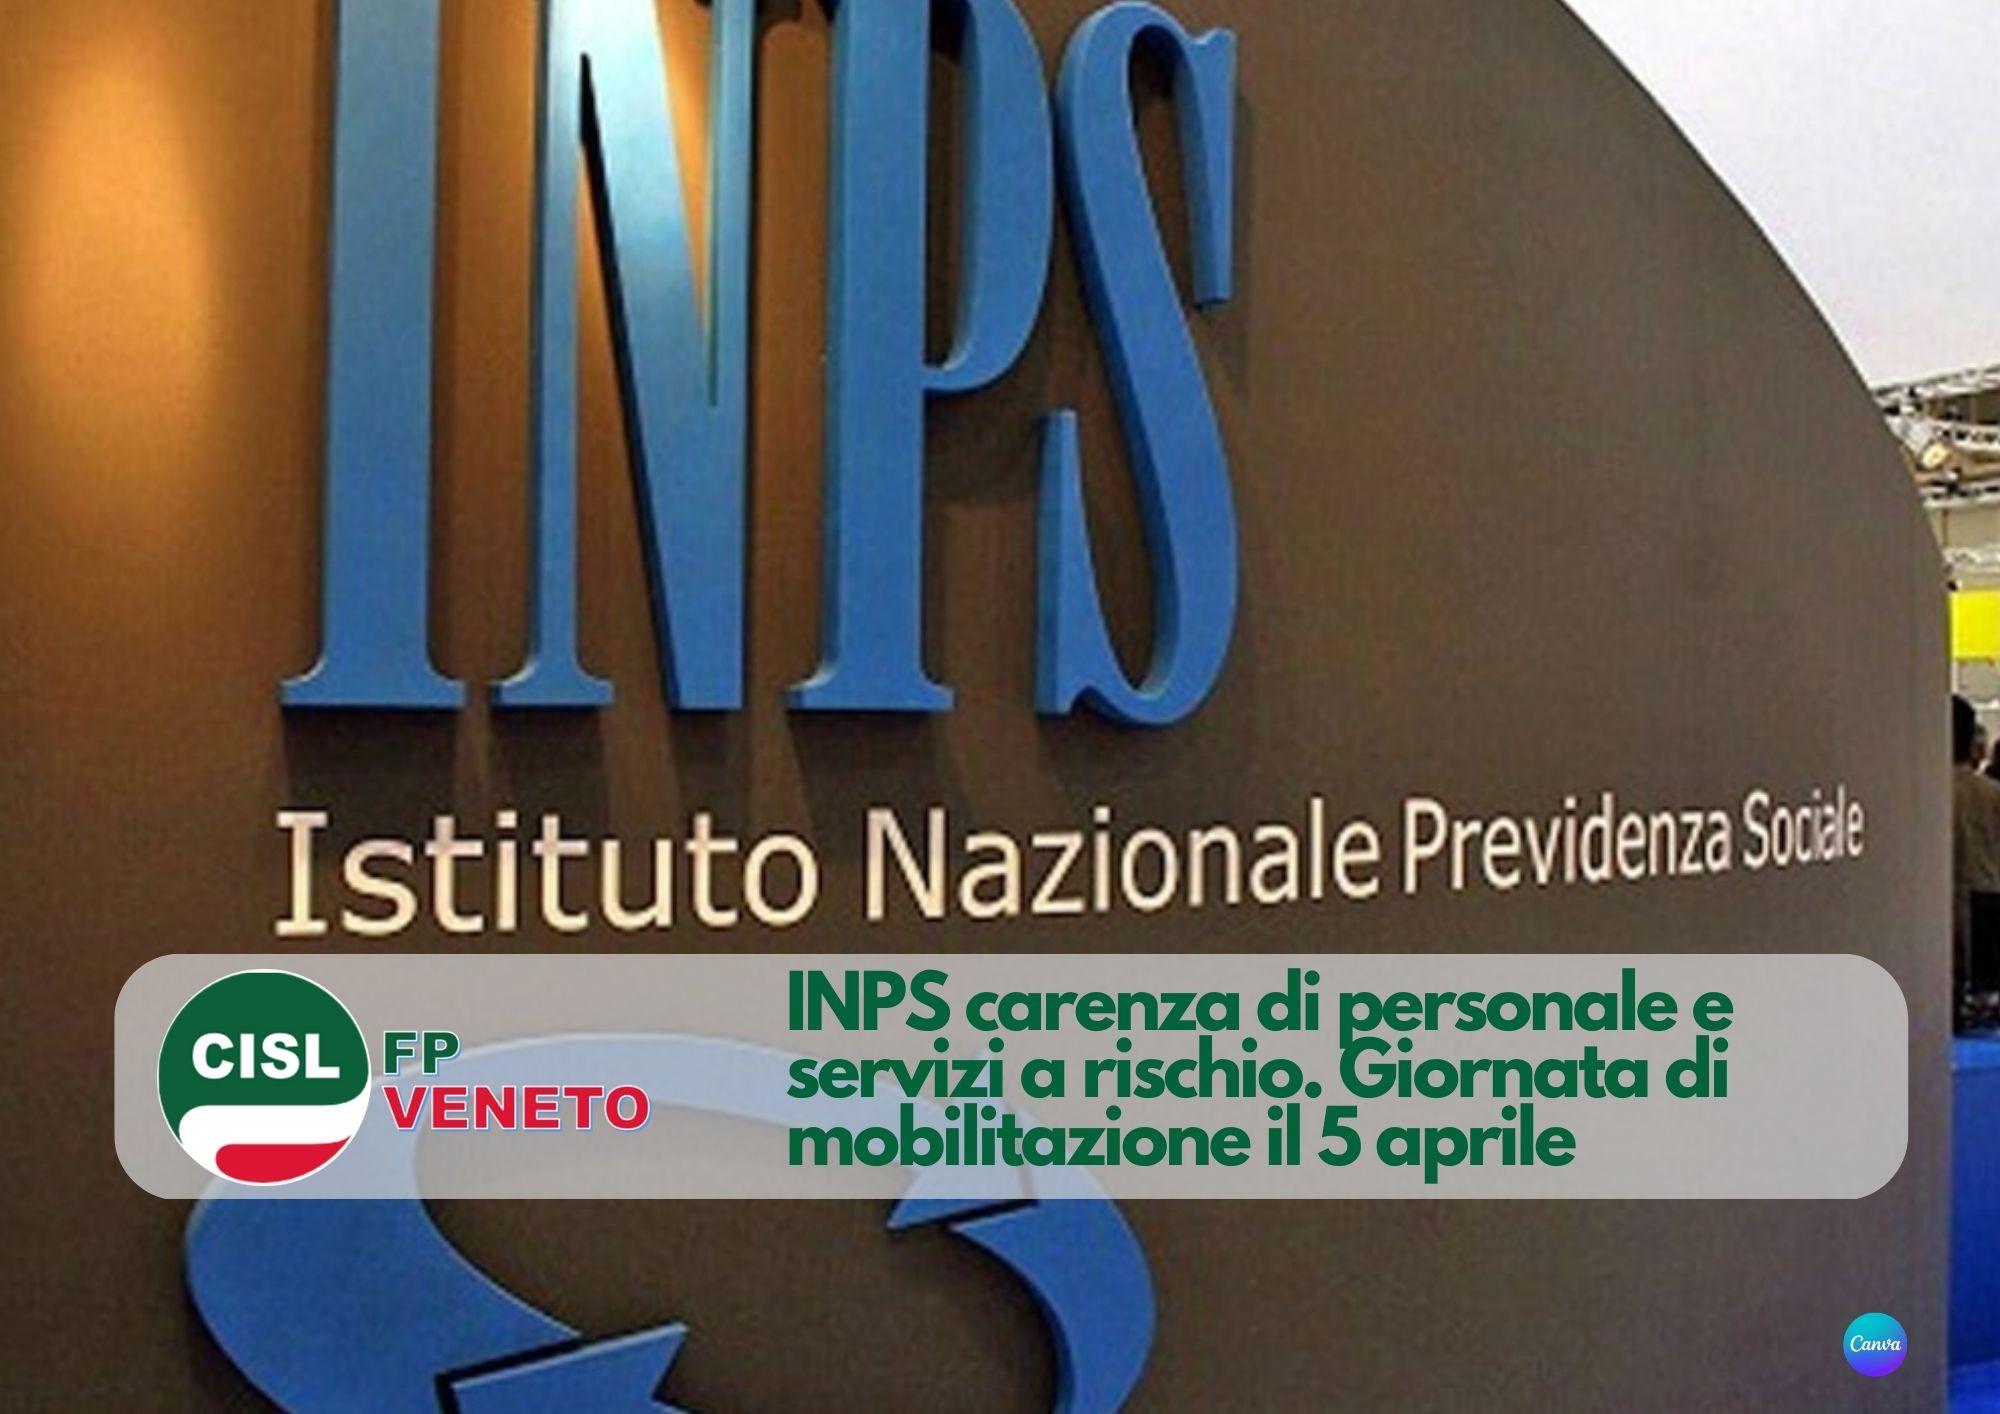 CISL FP Veneto. INPS carenza di personale e servizi a rischio. il 5 aprile giornata di mobilitazione in Veneto